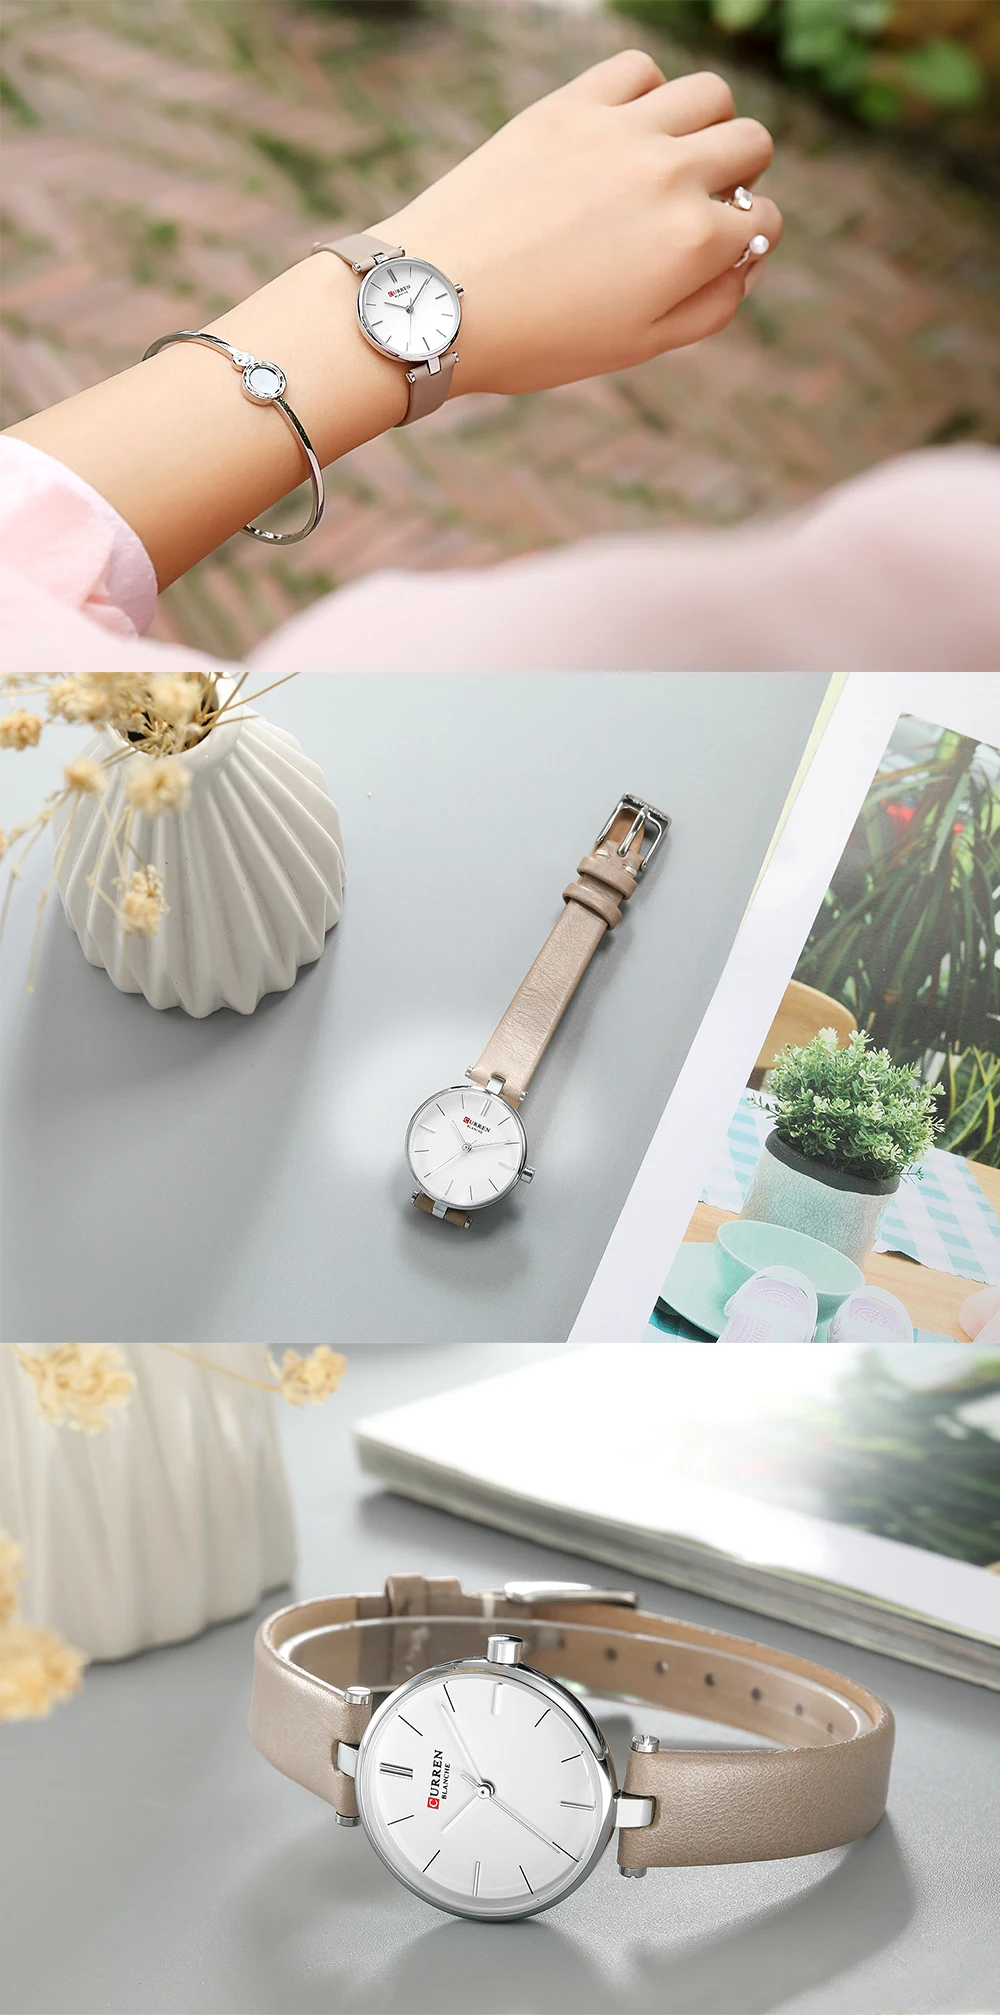 Лидирующий бренд CURREN женские часы Роскошные Кварцевые Наручные повседневные часы кожаный ремешок Световой Указатели для женщин часы Reloj